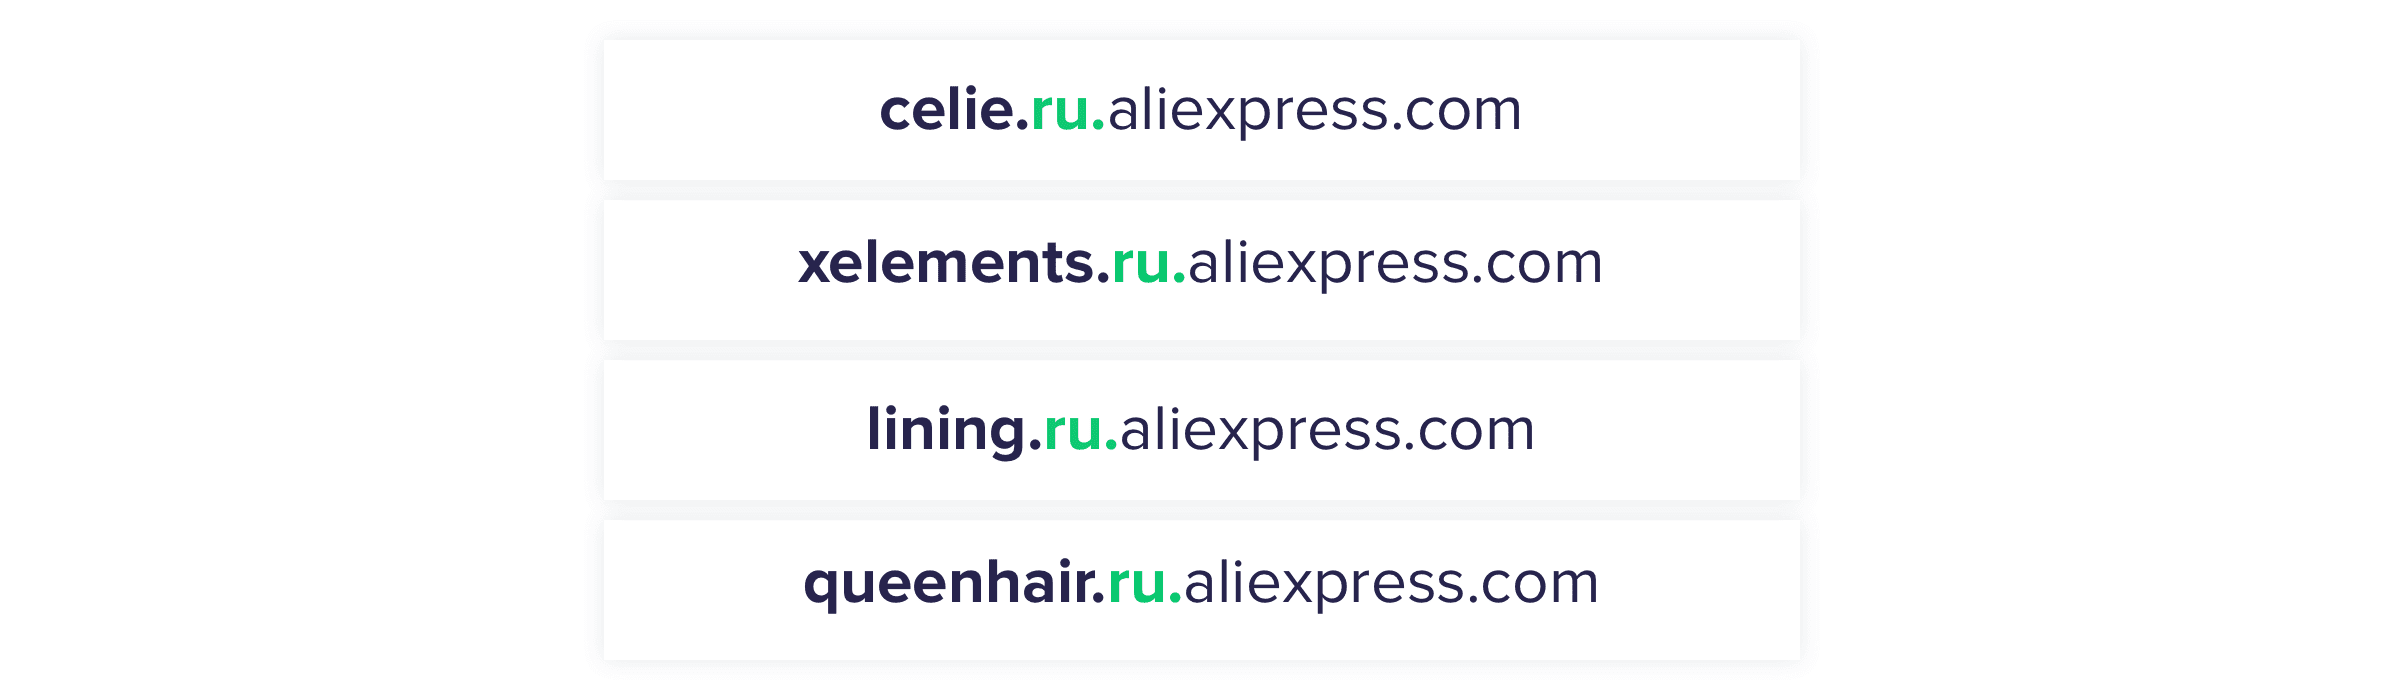 AliExpress bölgesel ve kategori alt alanları